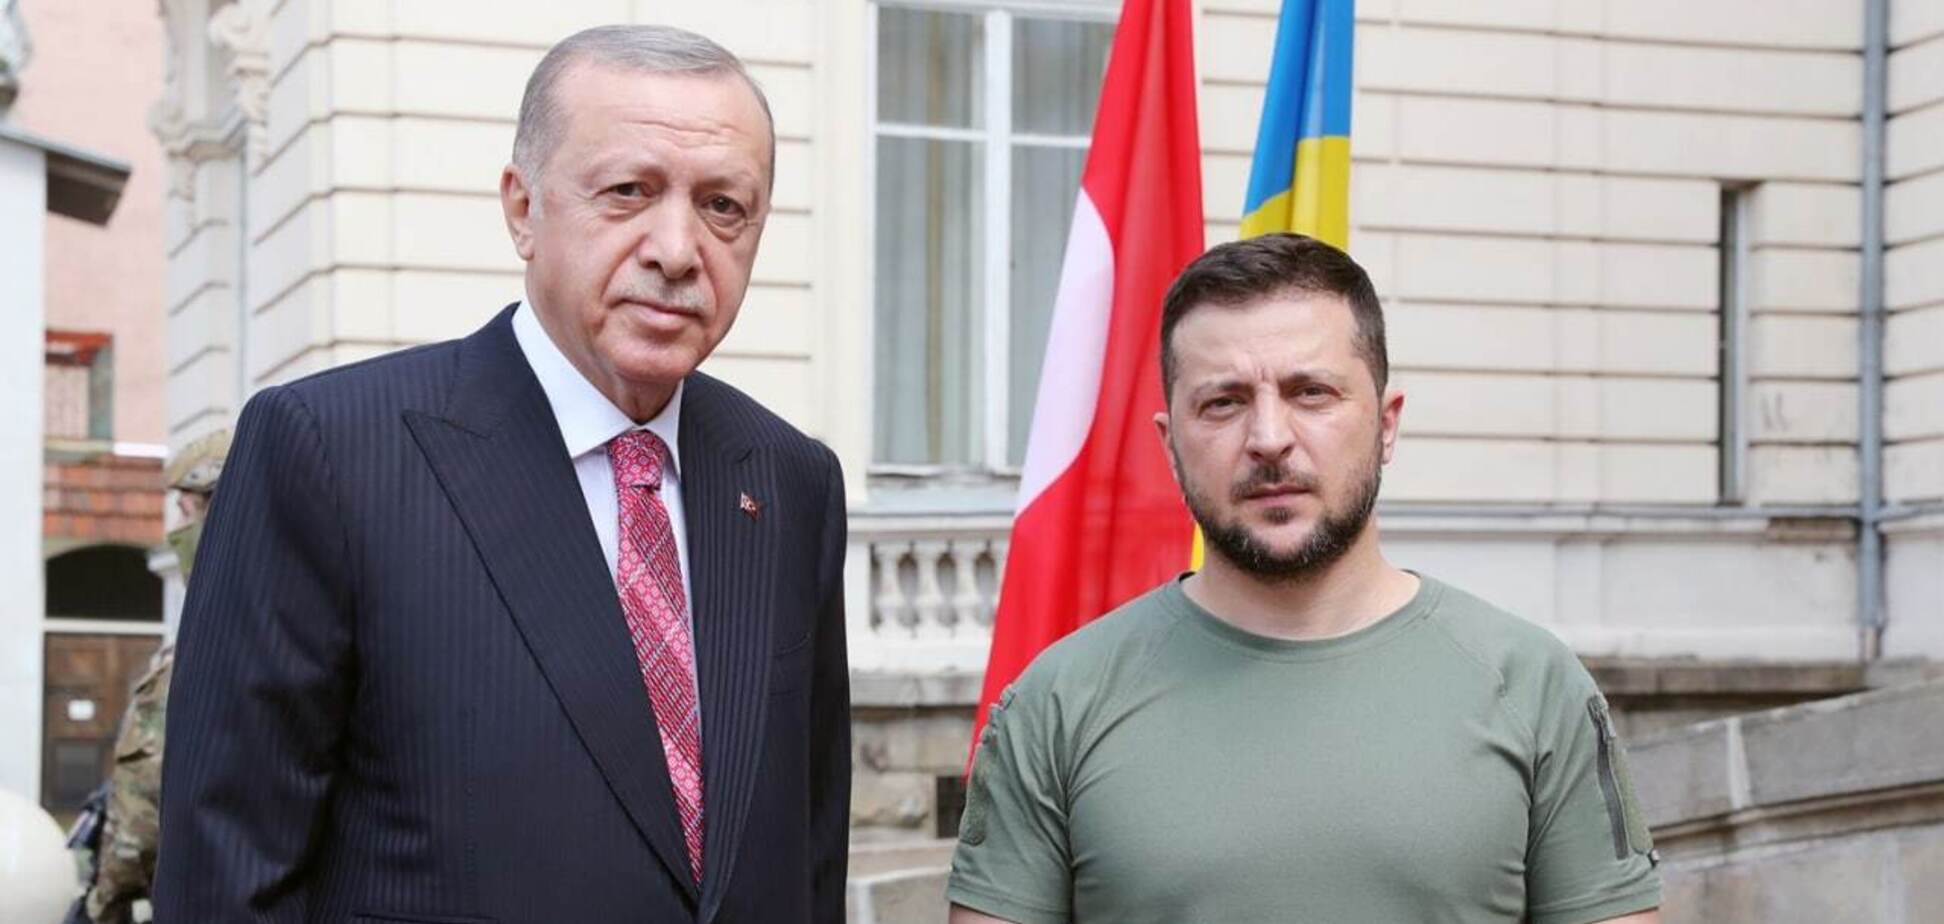 Появились первые кадры со встречи Зеленского и Эрдогана во Львове. Фото и видео